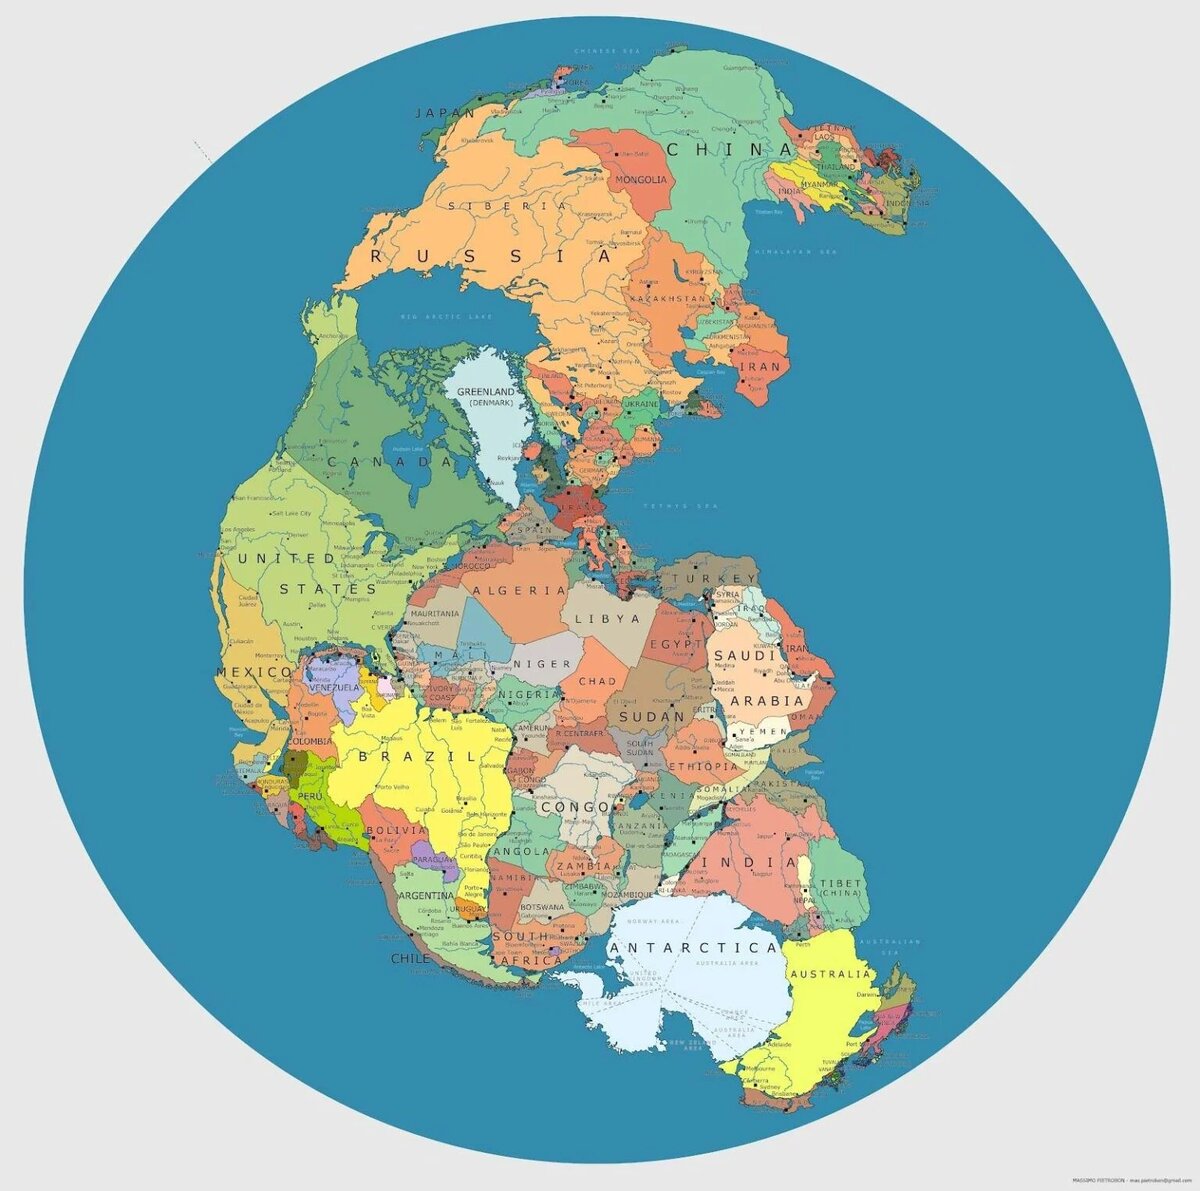 Материки Земли и части света: названия и описание